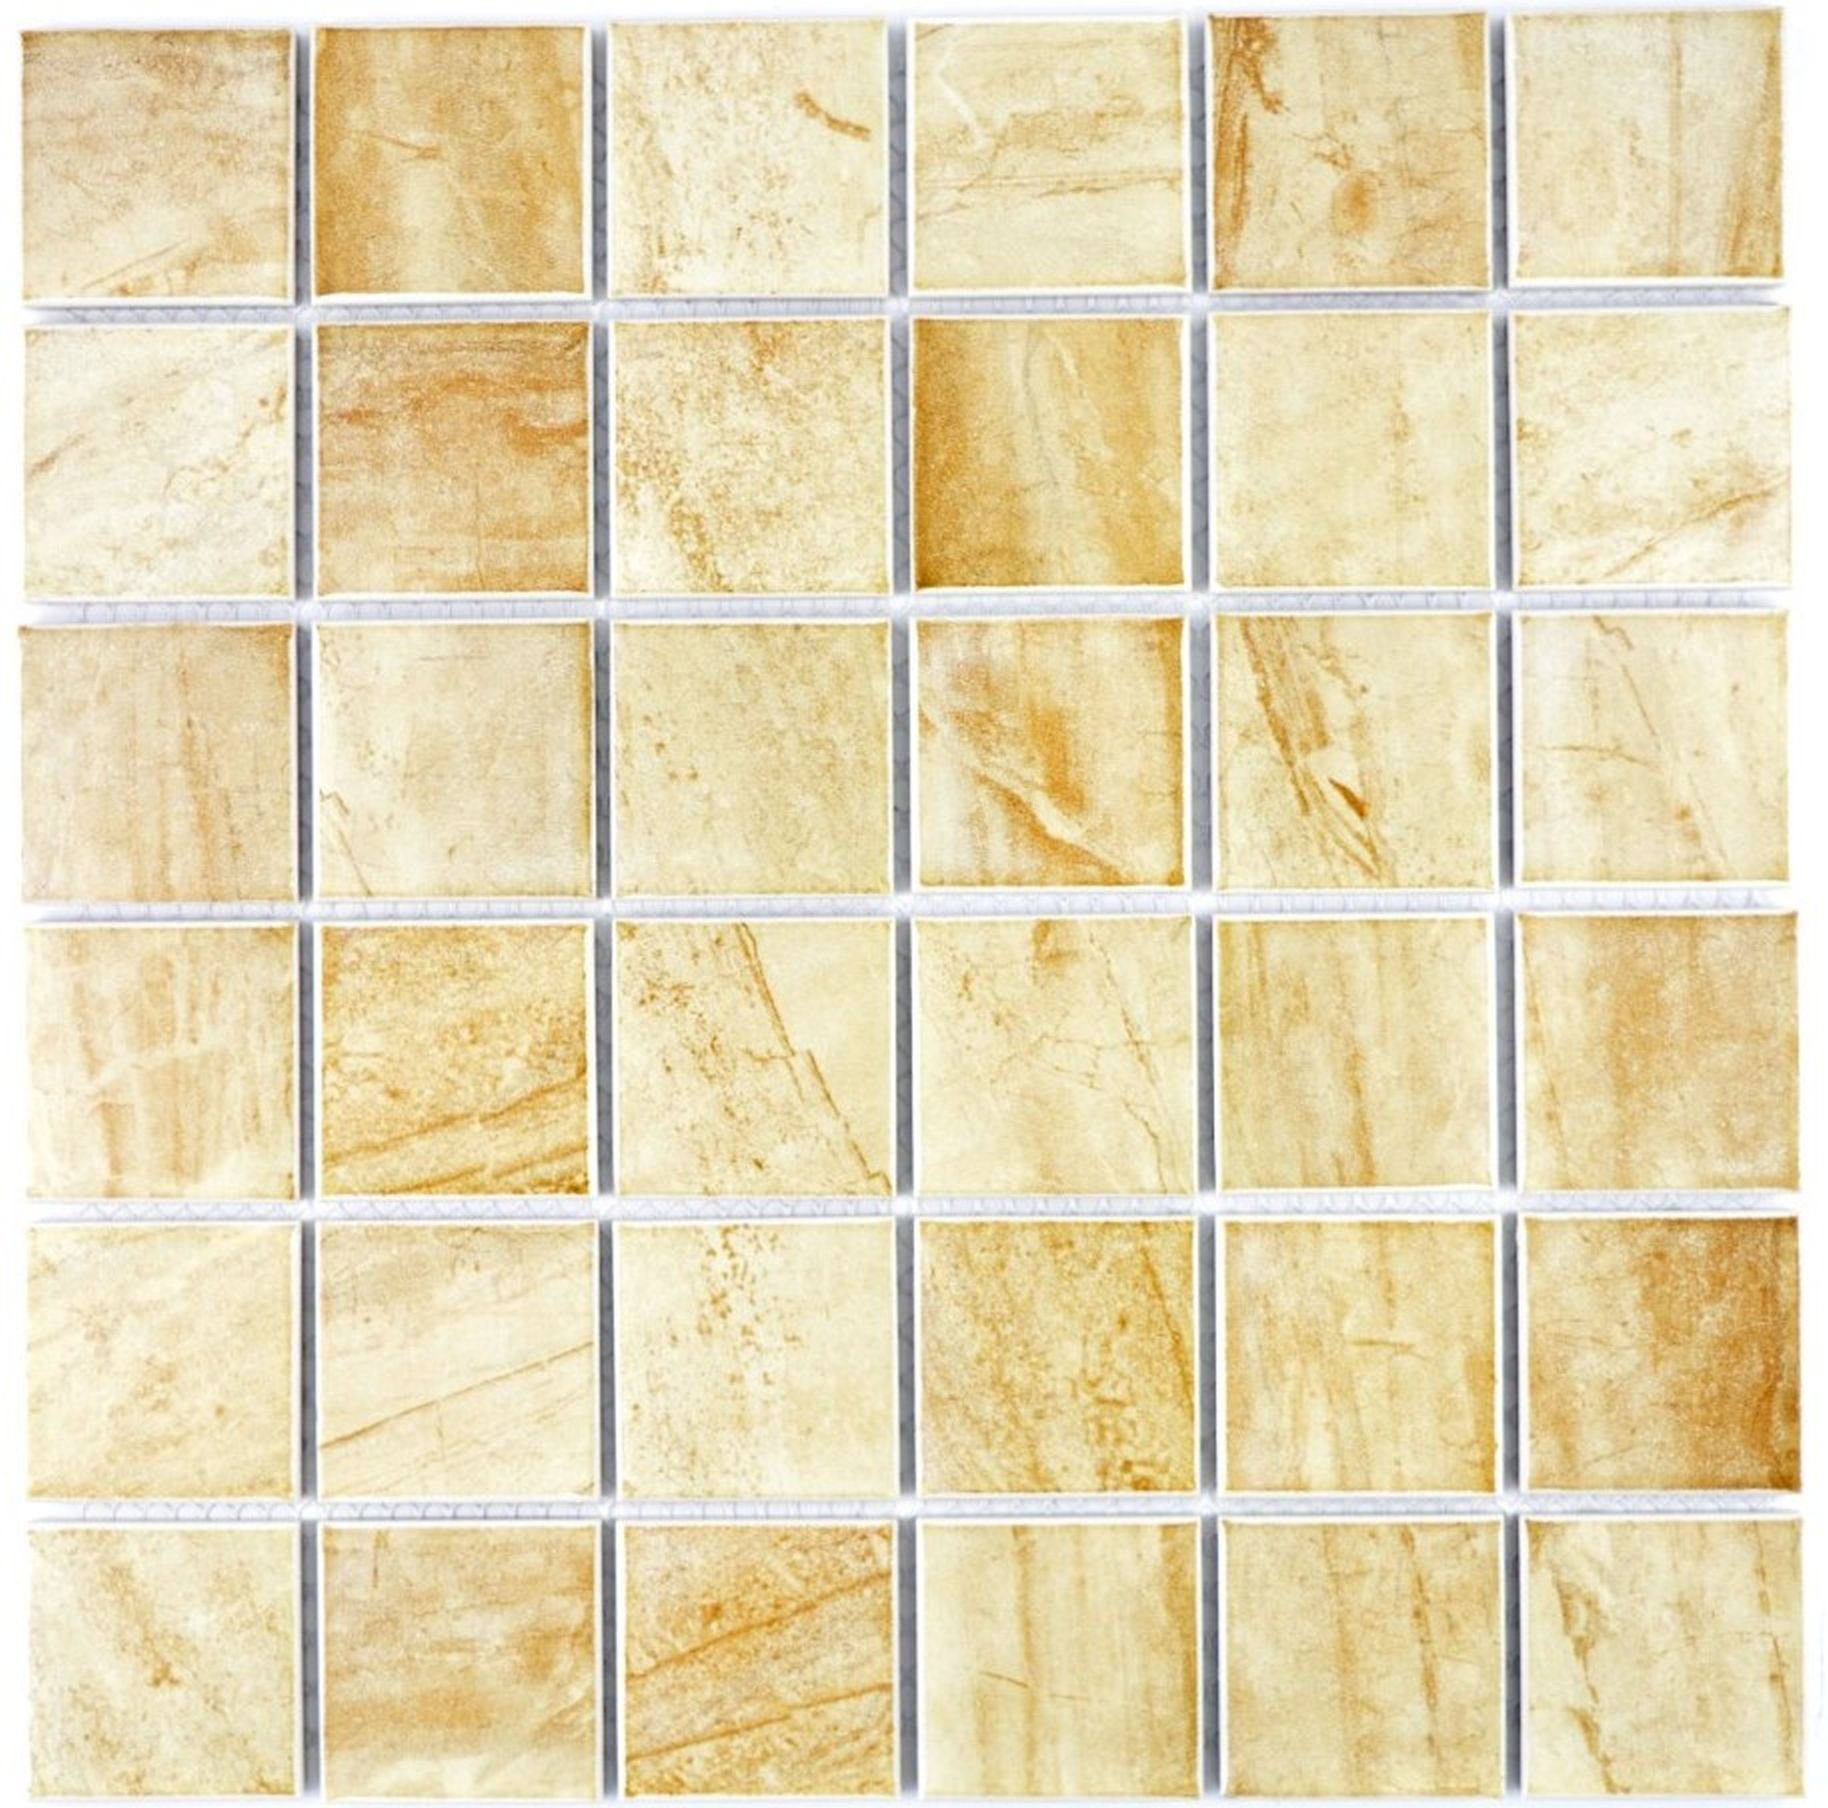 Mosani Mosaikfliesen Keramik Mosaik Fliese Natursteinoptik Struktur Travertin beige gelb